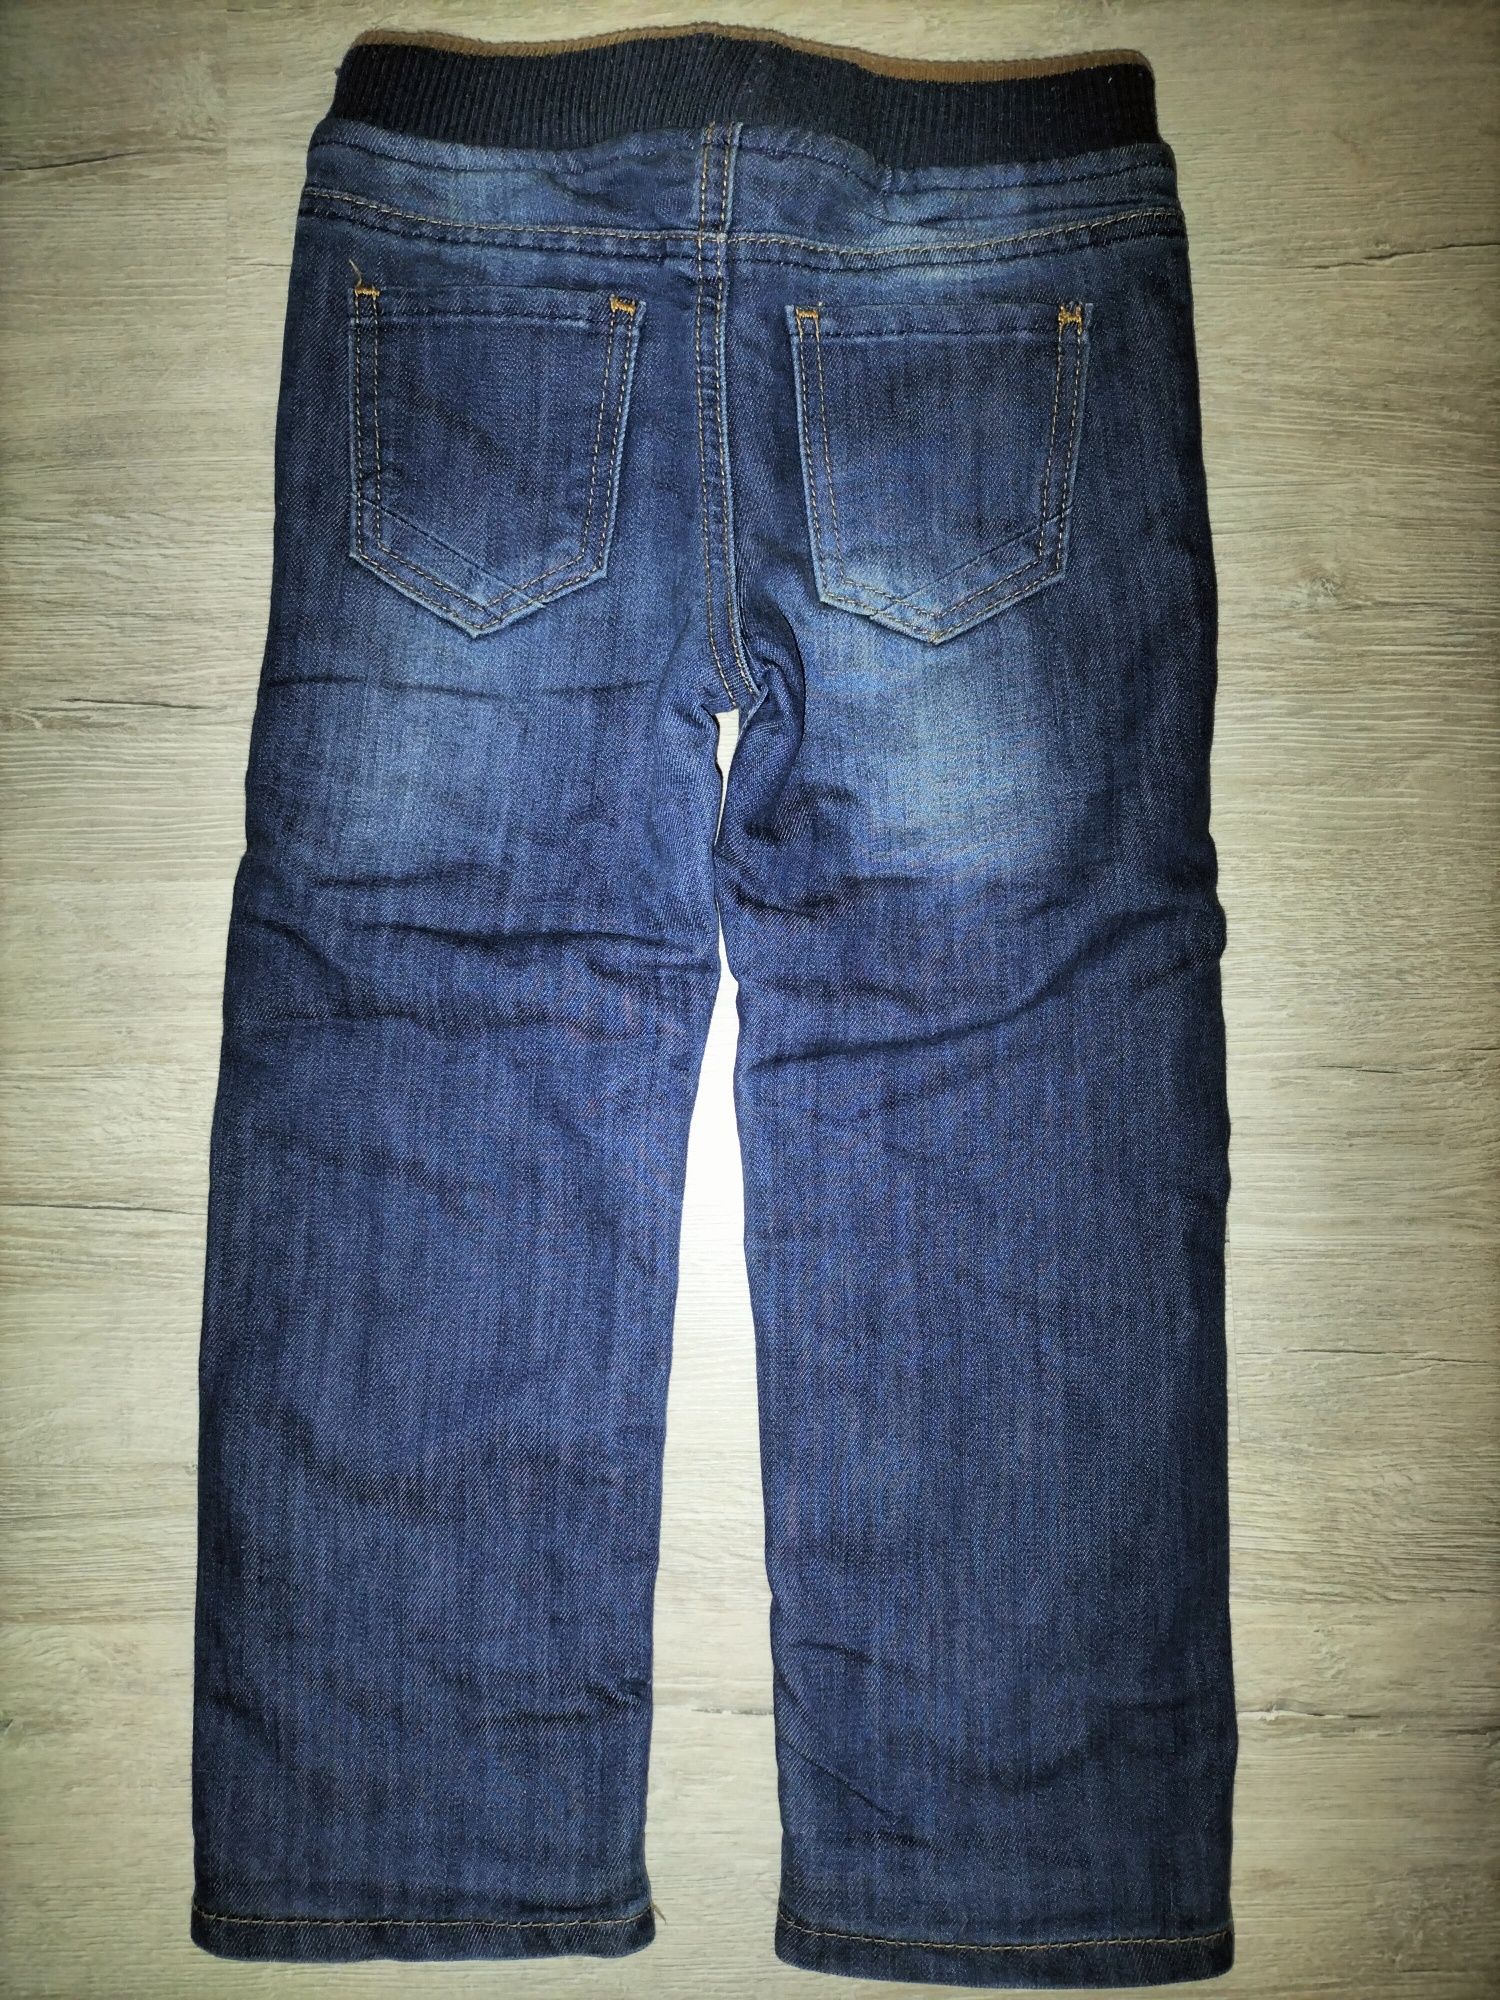 Утеплённые джинсы для мальчика р.104-110.